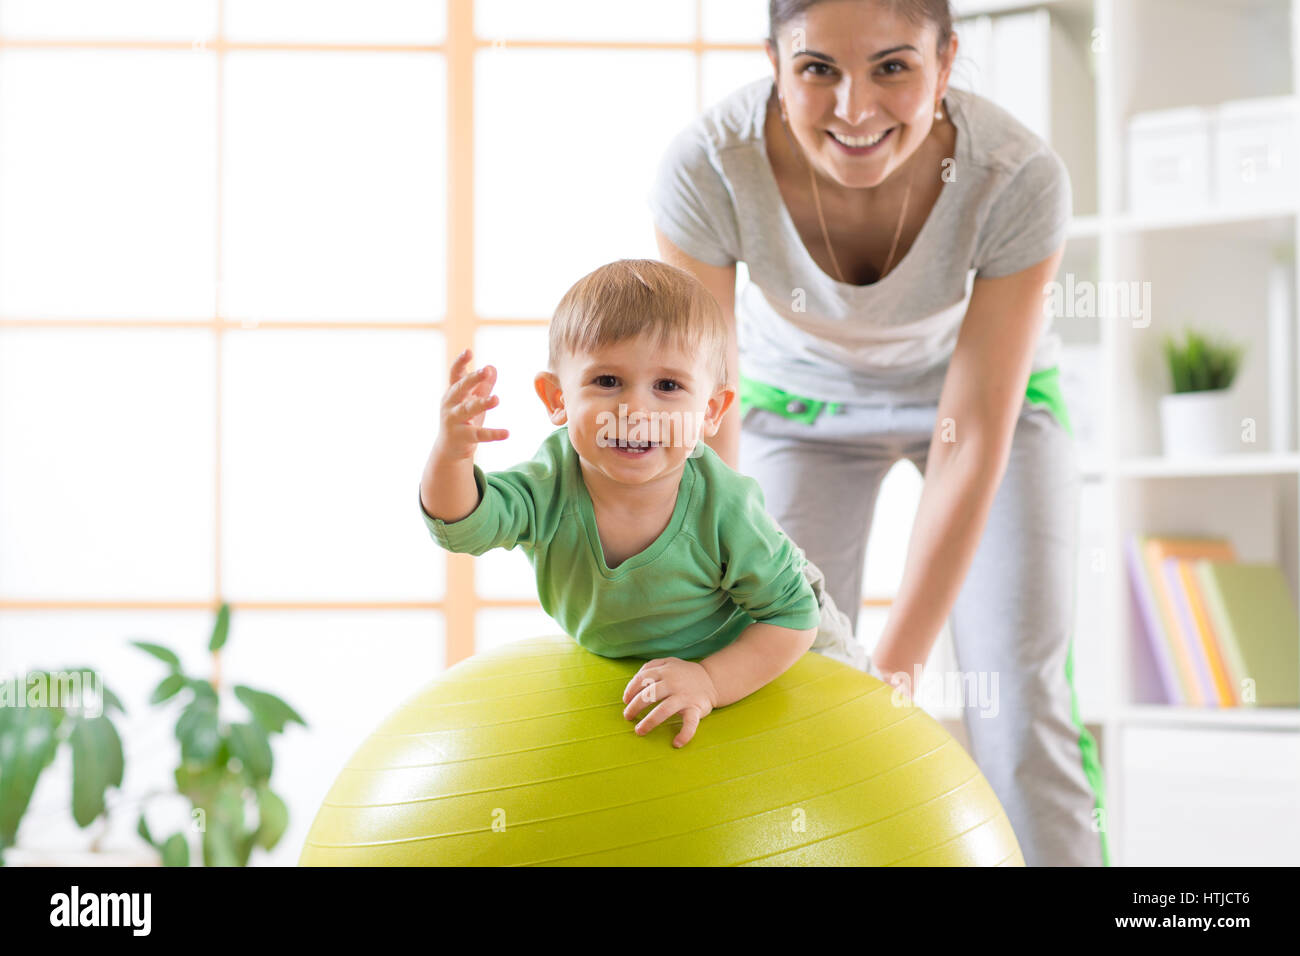 Happy mother and son bébé sur fitness ball. Pour les enfants sur Gimnastics fitball. Banque D'Images